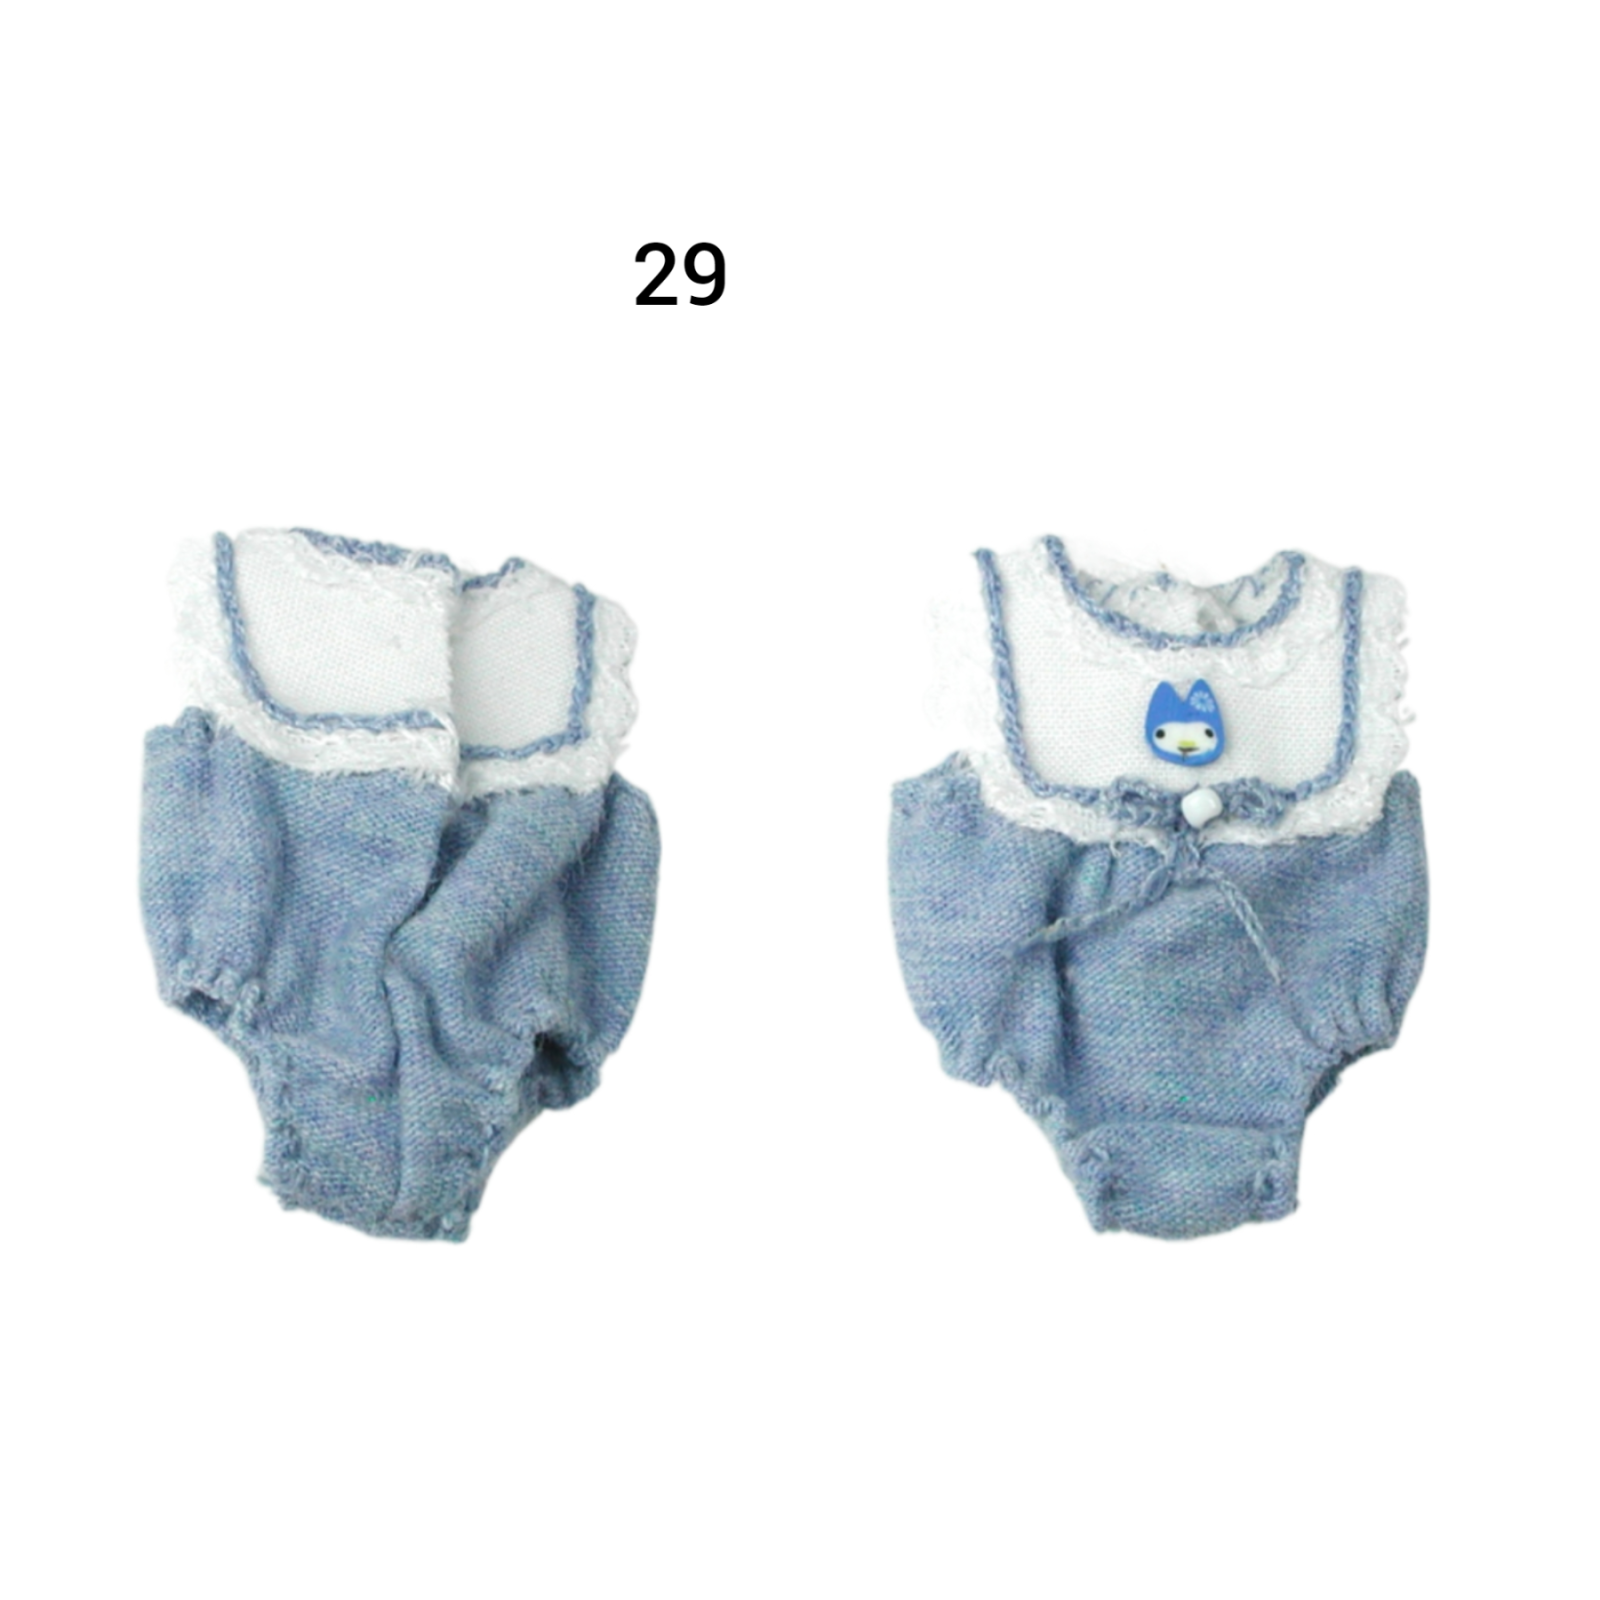 Pumphose Spielhose für das Baby Kleidung Maßstab 1:12 5